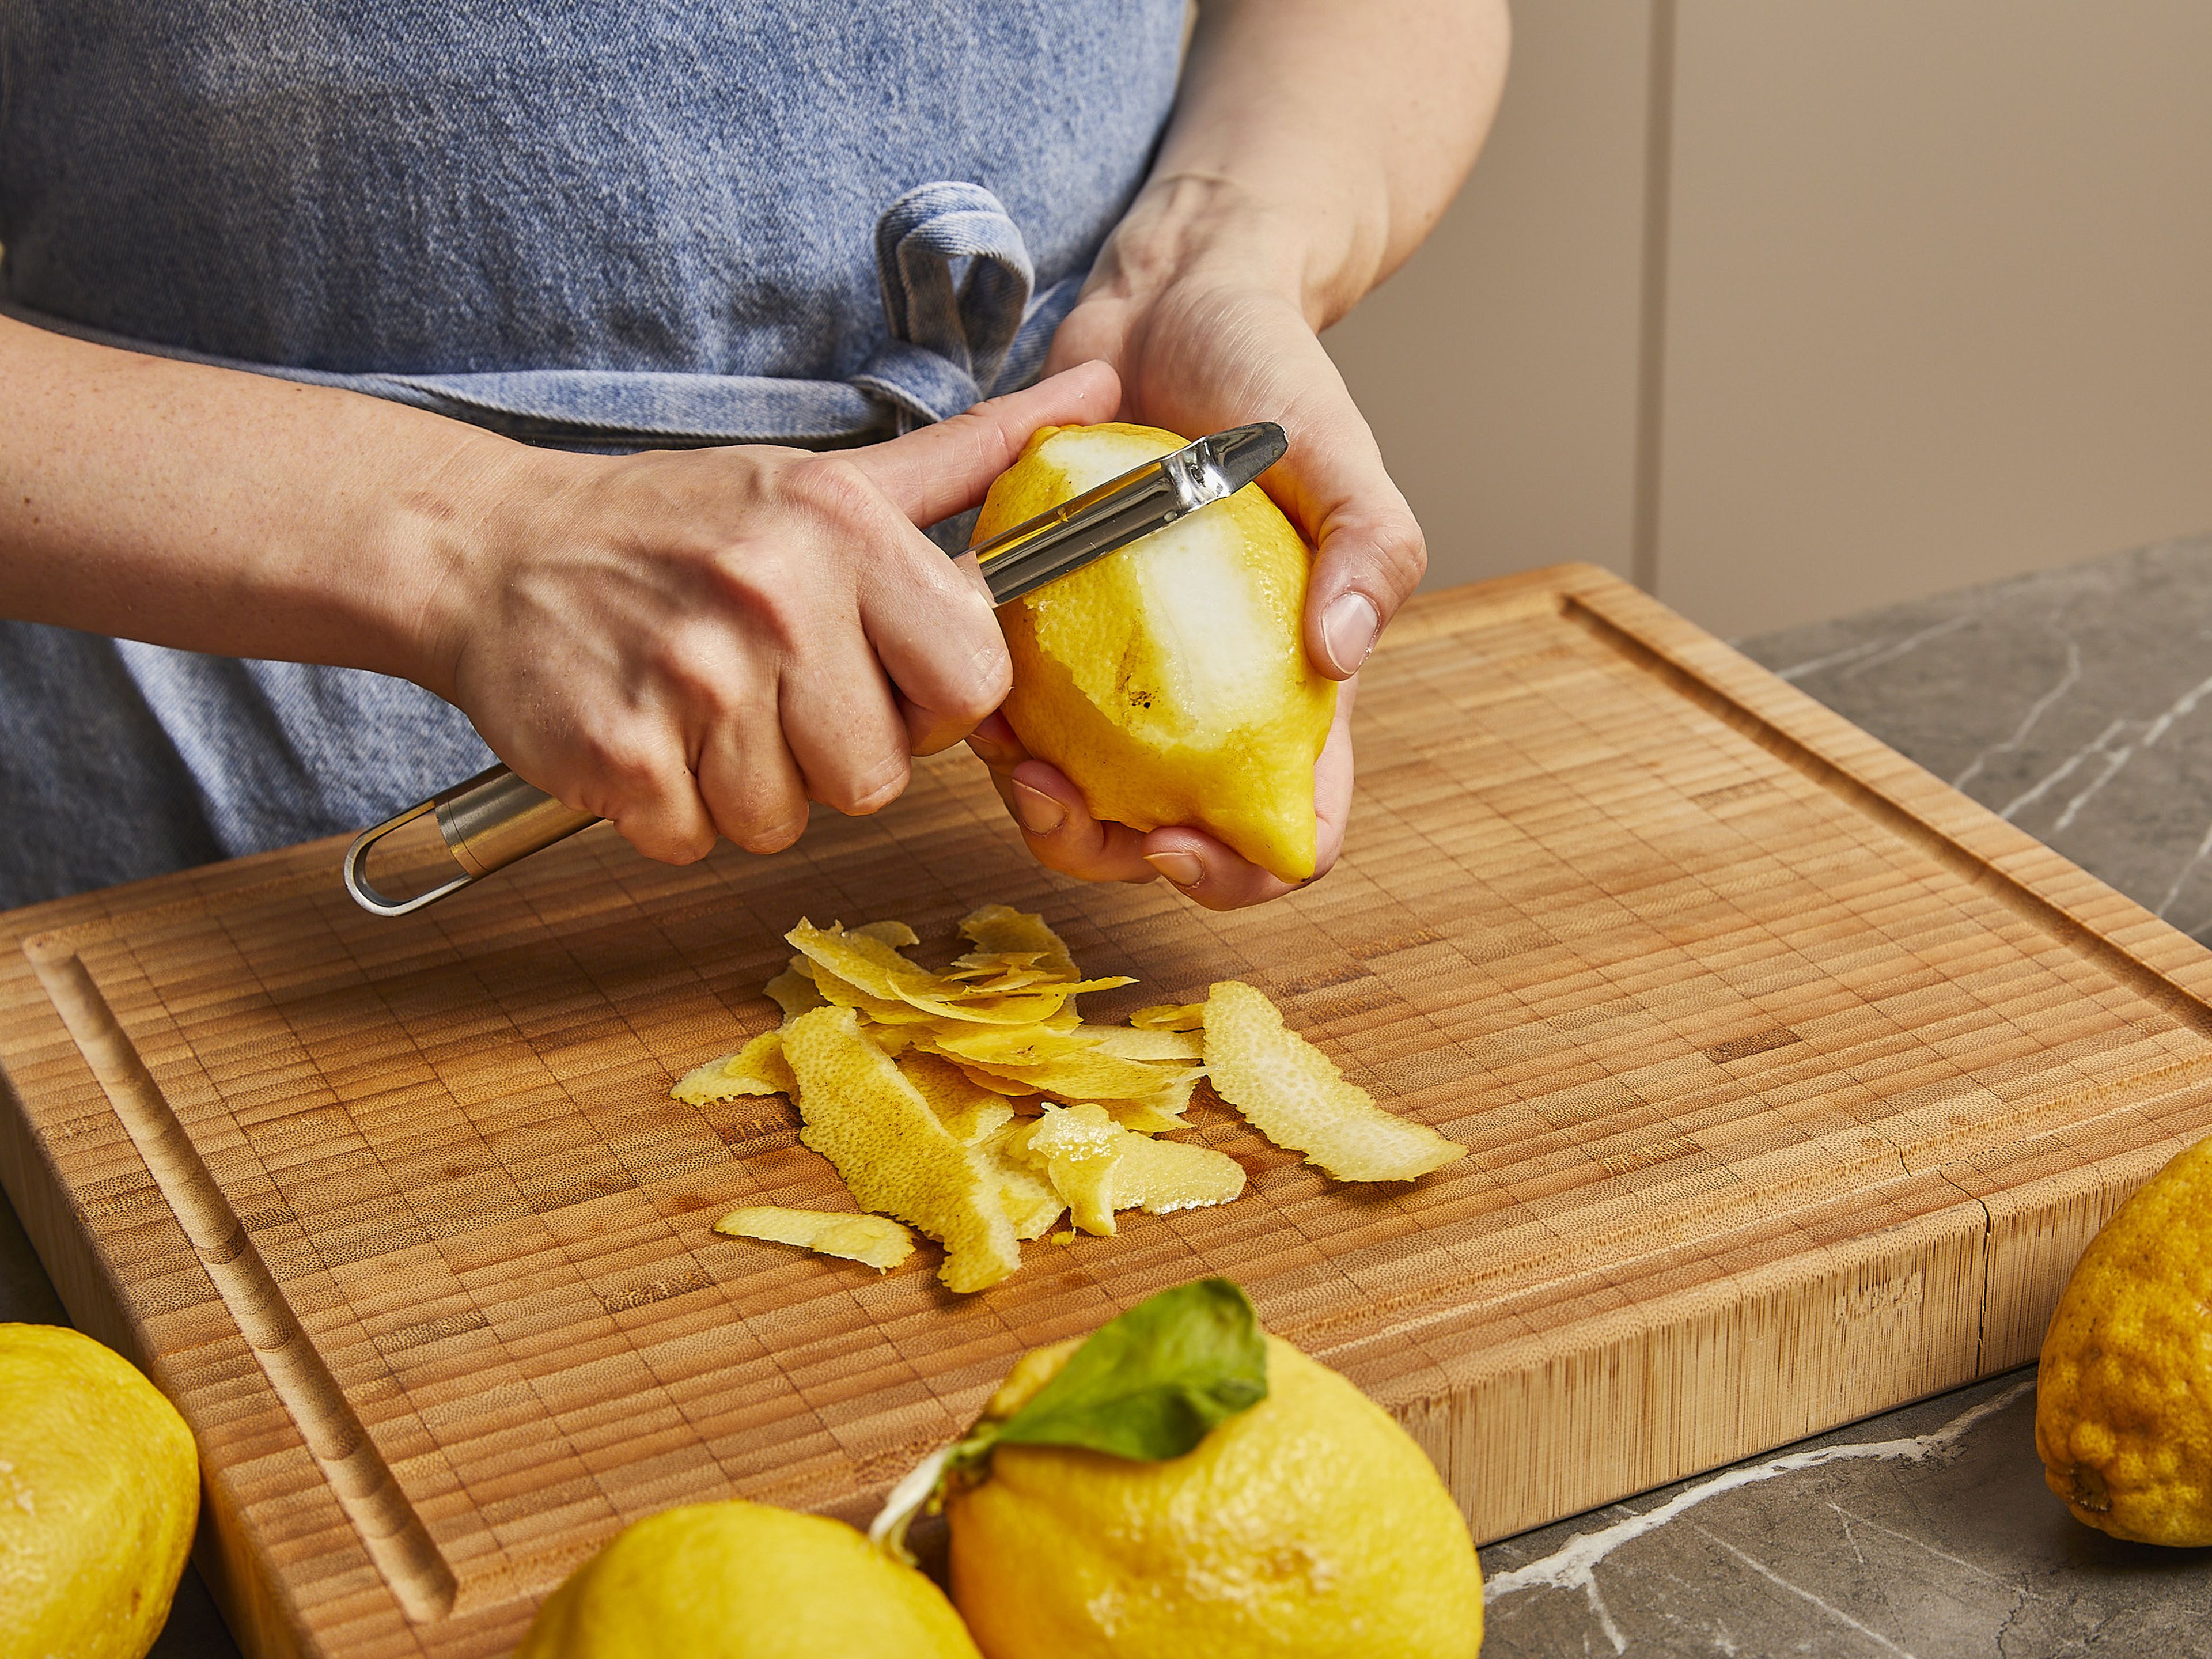 Für den Limoncello, die frischen Zitronen gründlich mit heißem Wasser waschen und abtrocknen. Zitronenschale mit einem Sparschäler schälen. Darauf achten, dass nicht zu viel von der weißen Haut abgeschält wird, damit er nicht zu bitter wird.